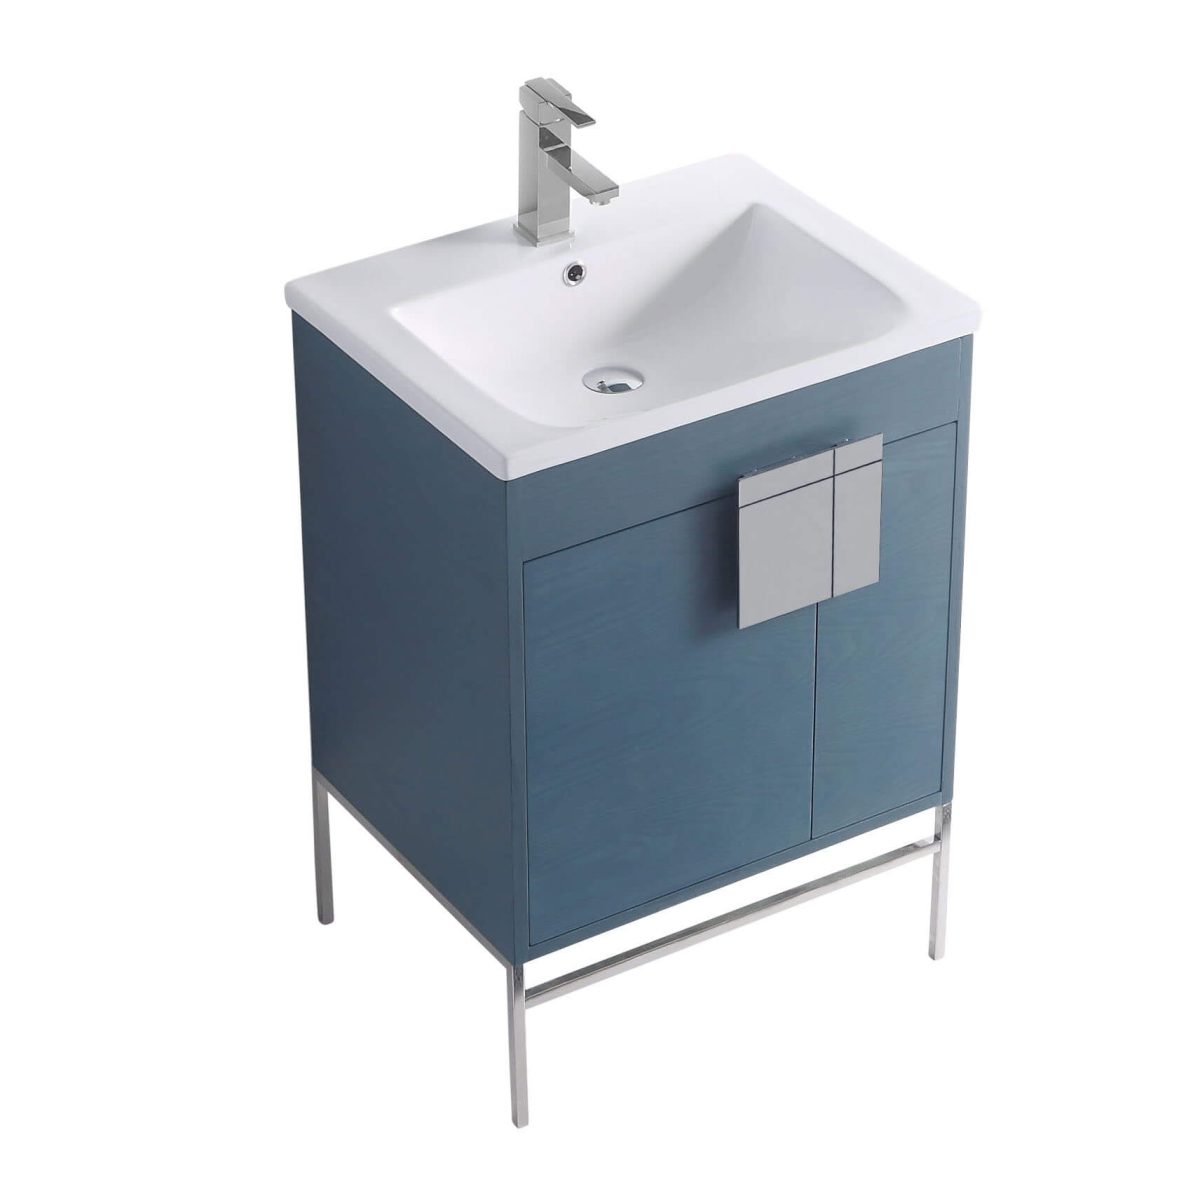 Shawbridge 24" Modern Bathroom Vanity  French Blue with Polished Chrome Hardware